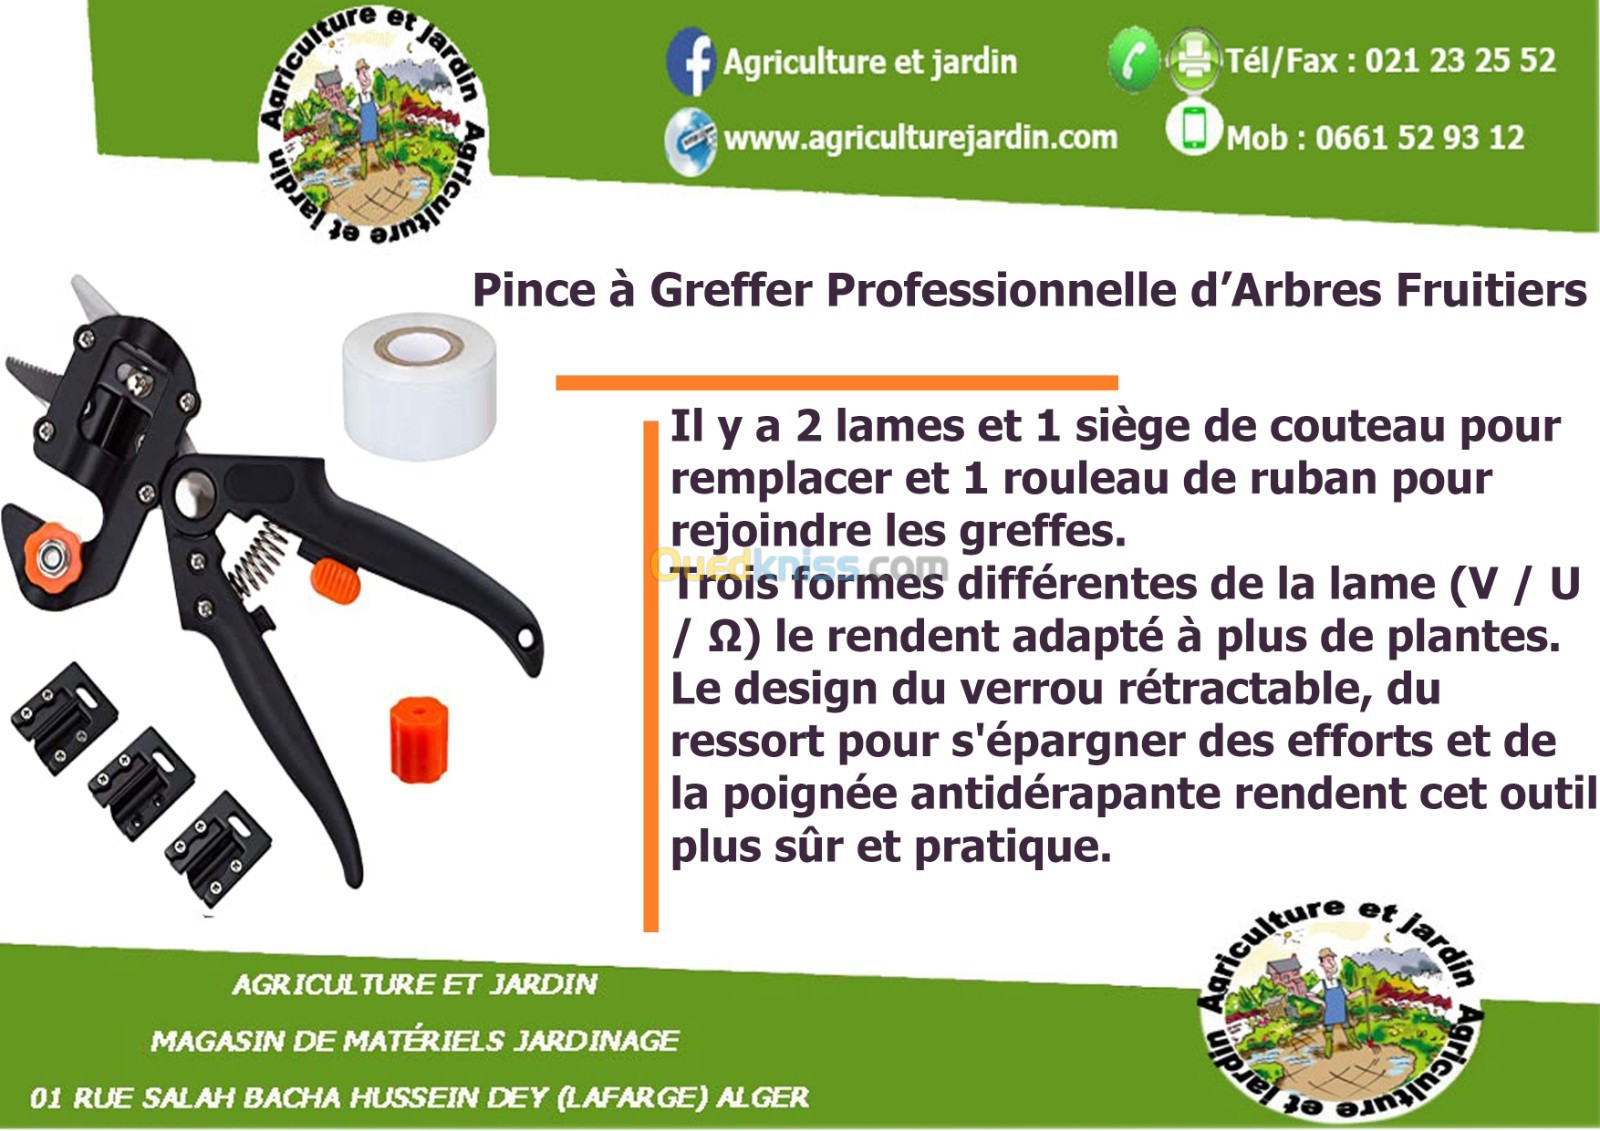 Pince à Greffer Professionnelle d'Arbres Fruitiers - Alger Algérie